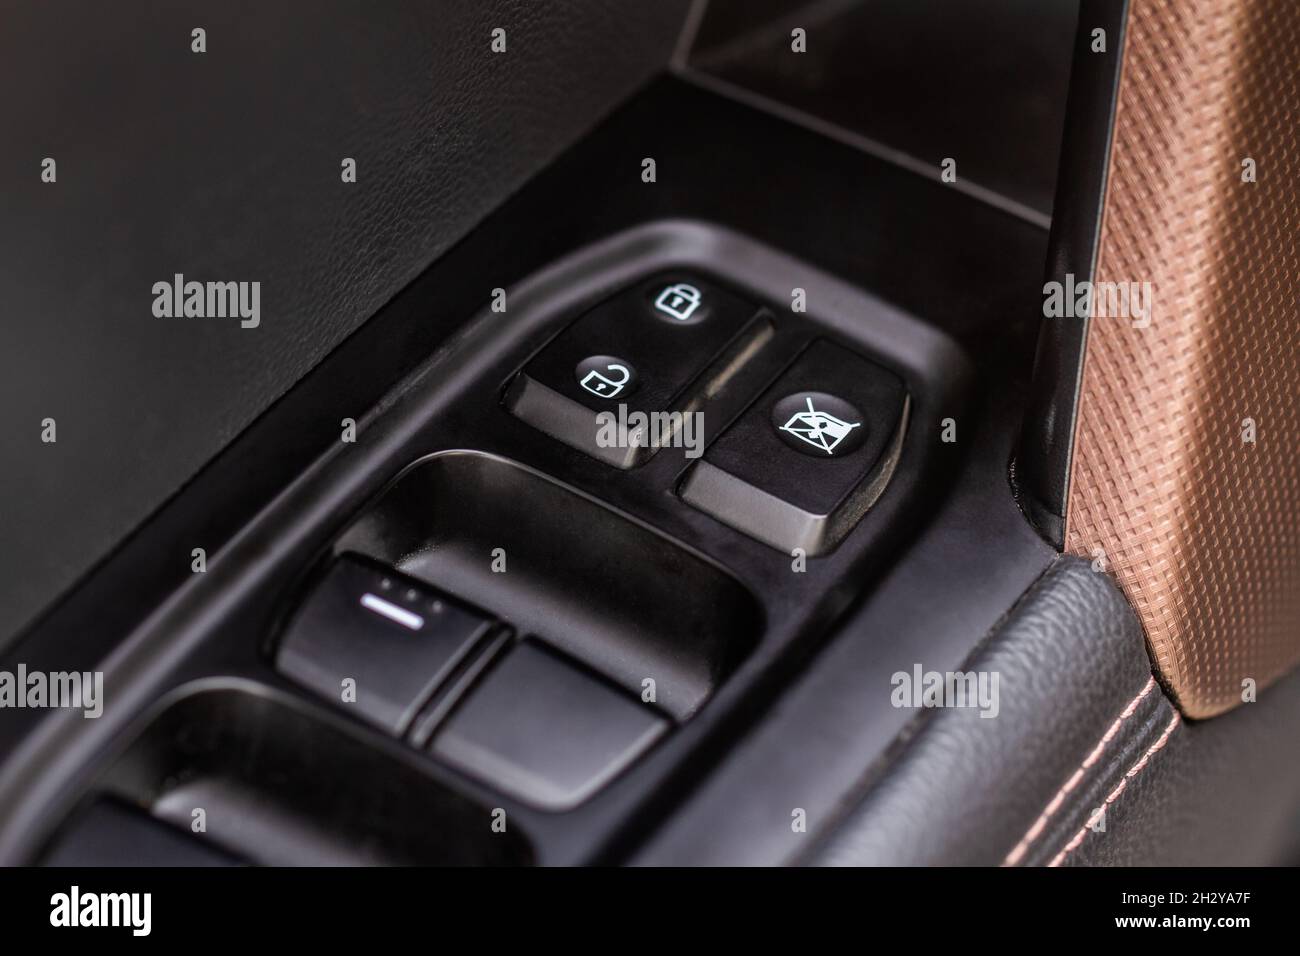 Modernes Auto innen Armlehne mit Fenster Control Panel, Door Lock-Button.  Details im Innenraum Stockfotografie - Alamy